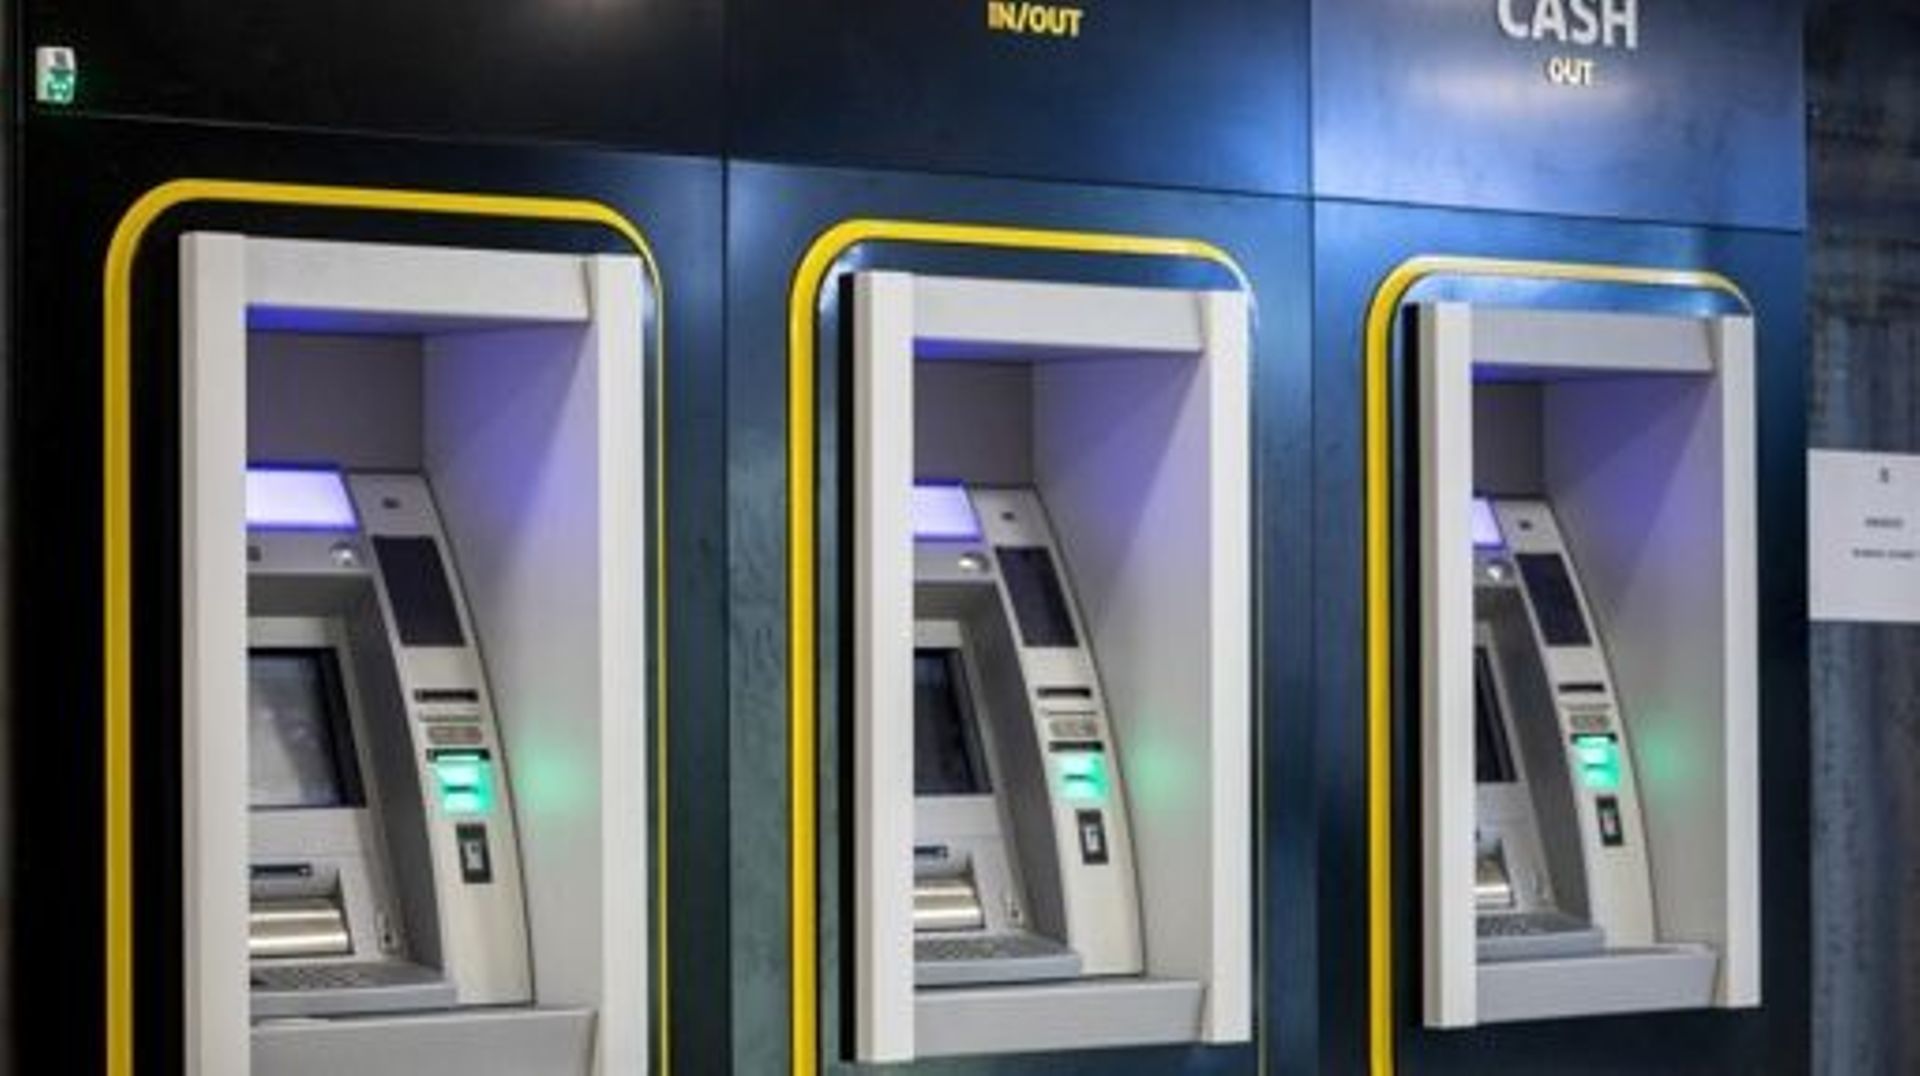 Nuovi bancomat: il governo federale è costretto a rivelare il suo accordo con Batopen